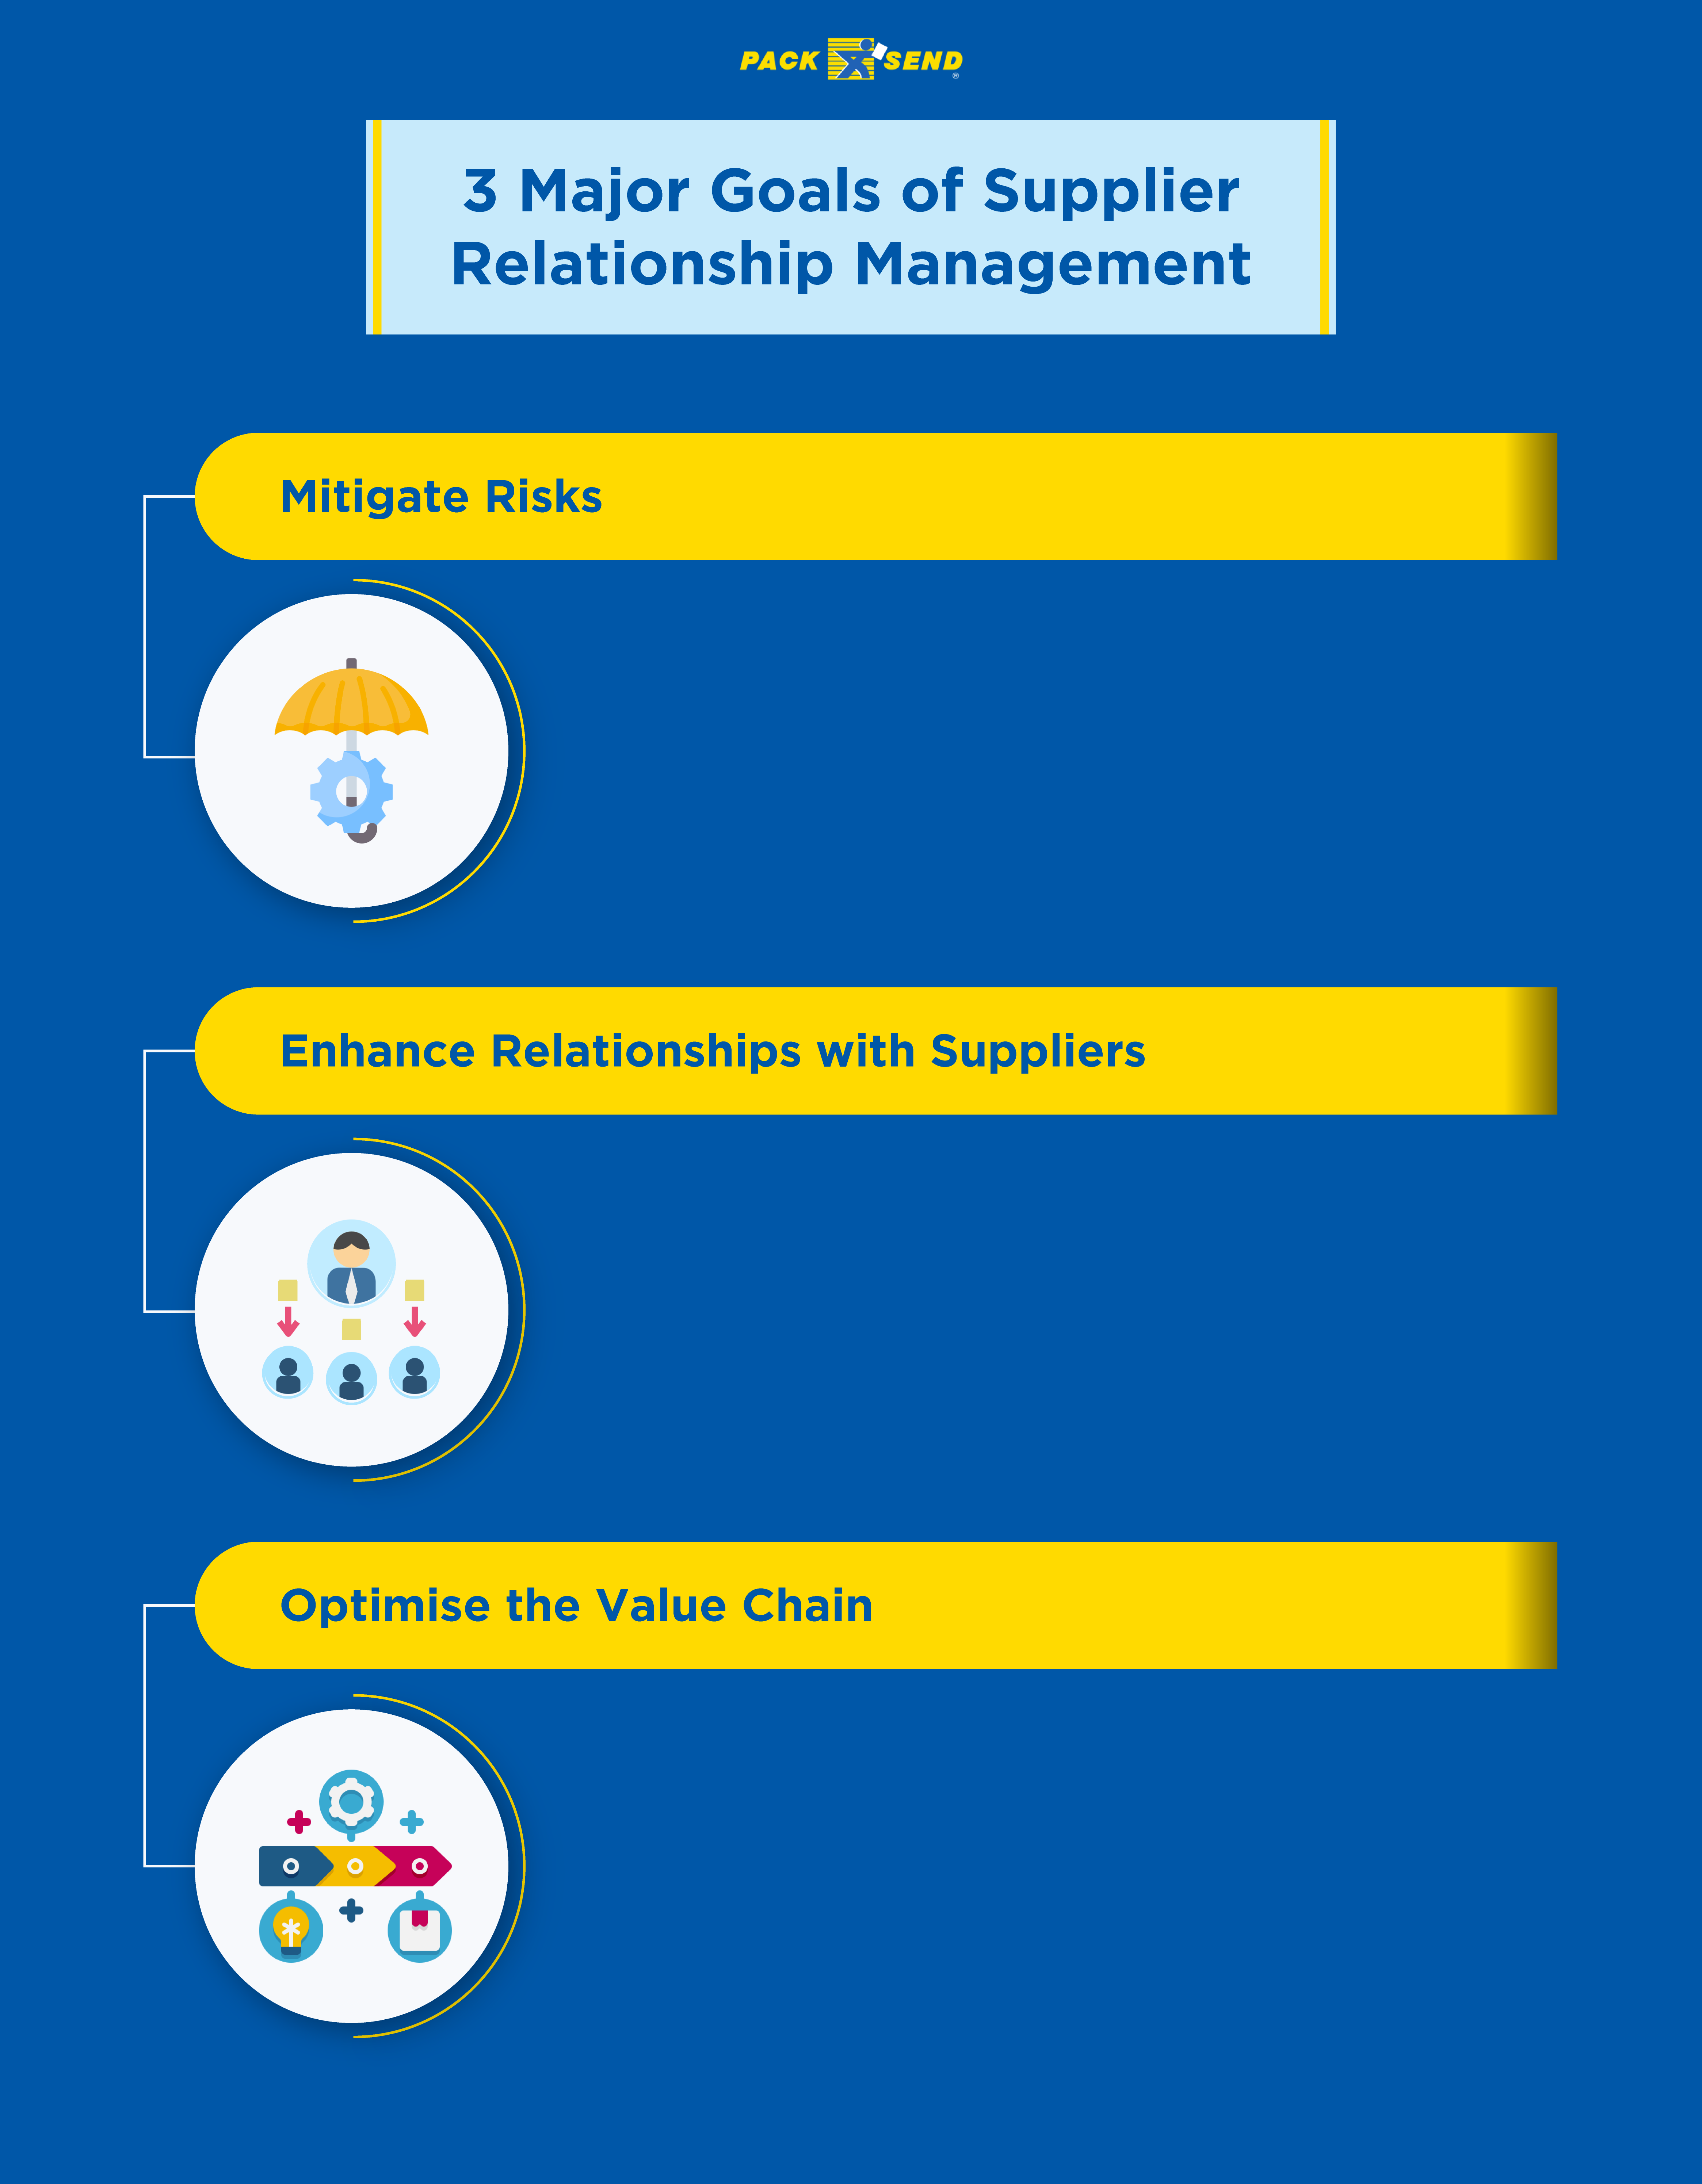 3 Major Goals of Supplier Relationship Management